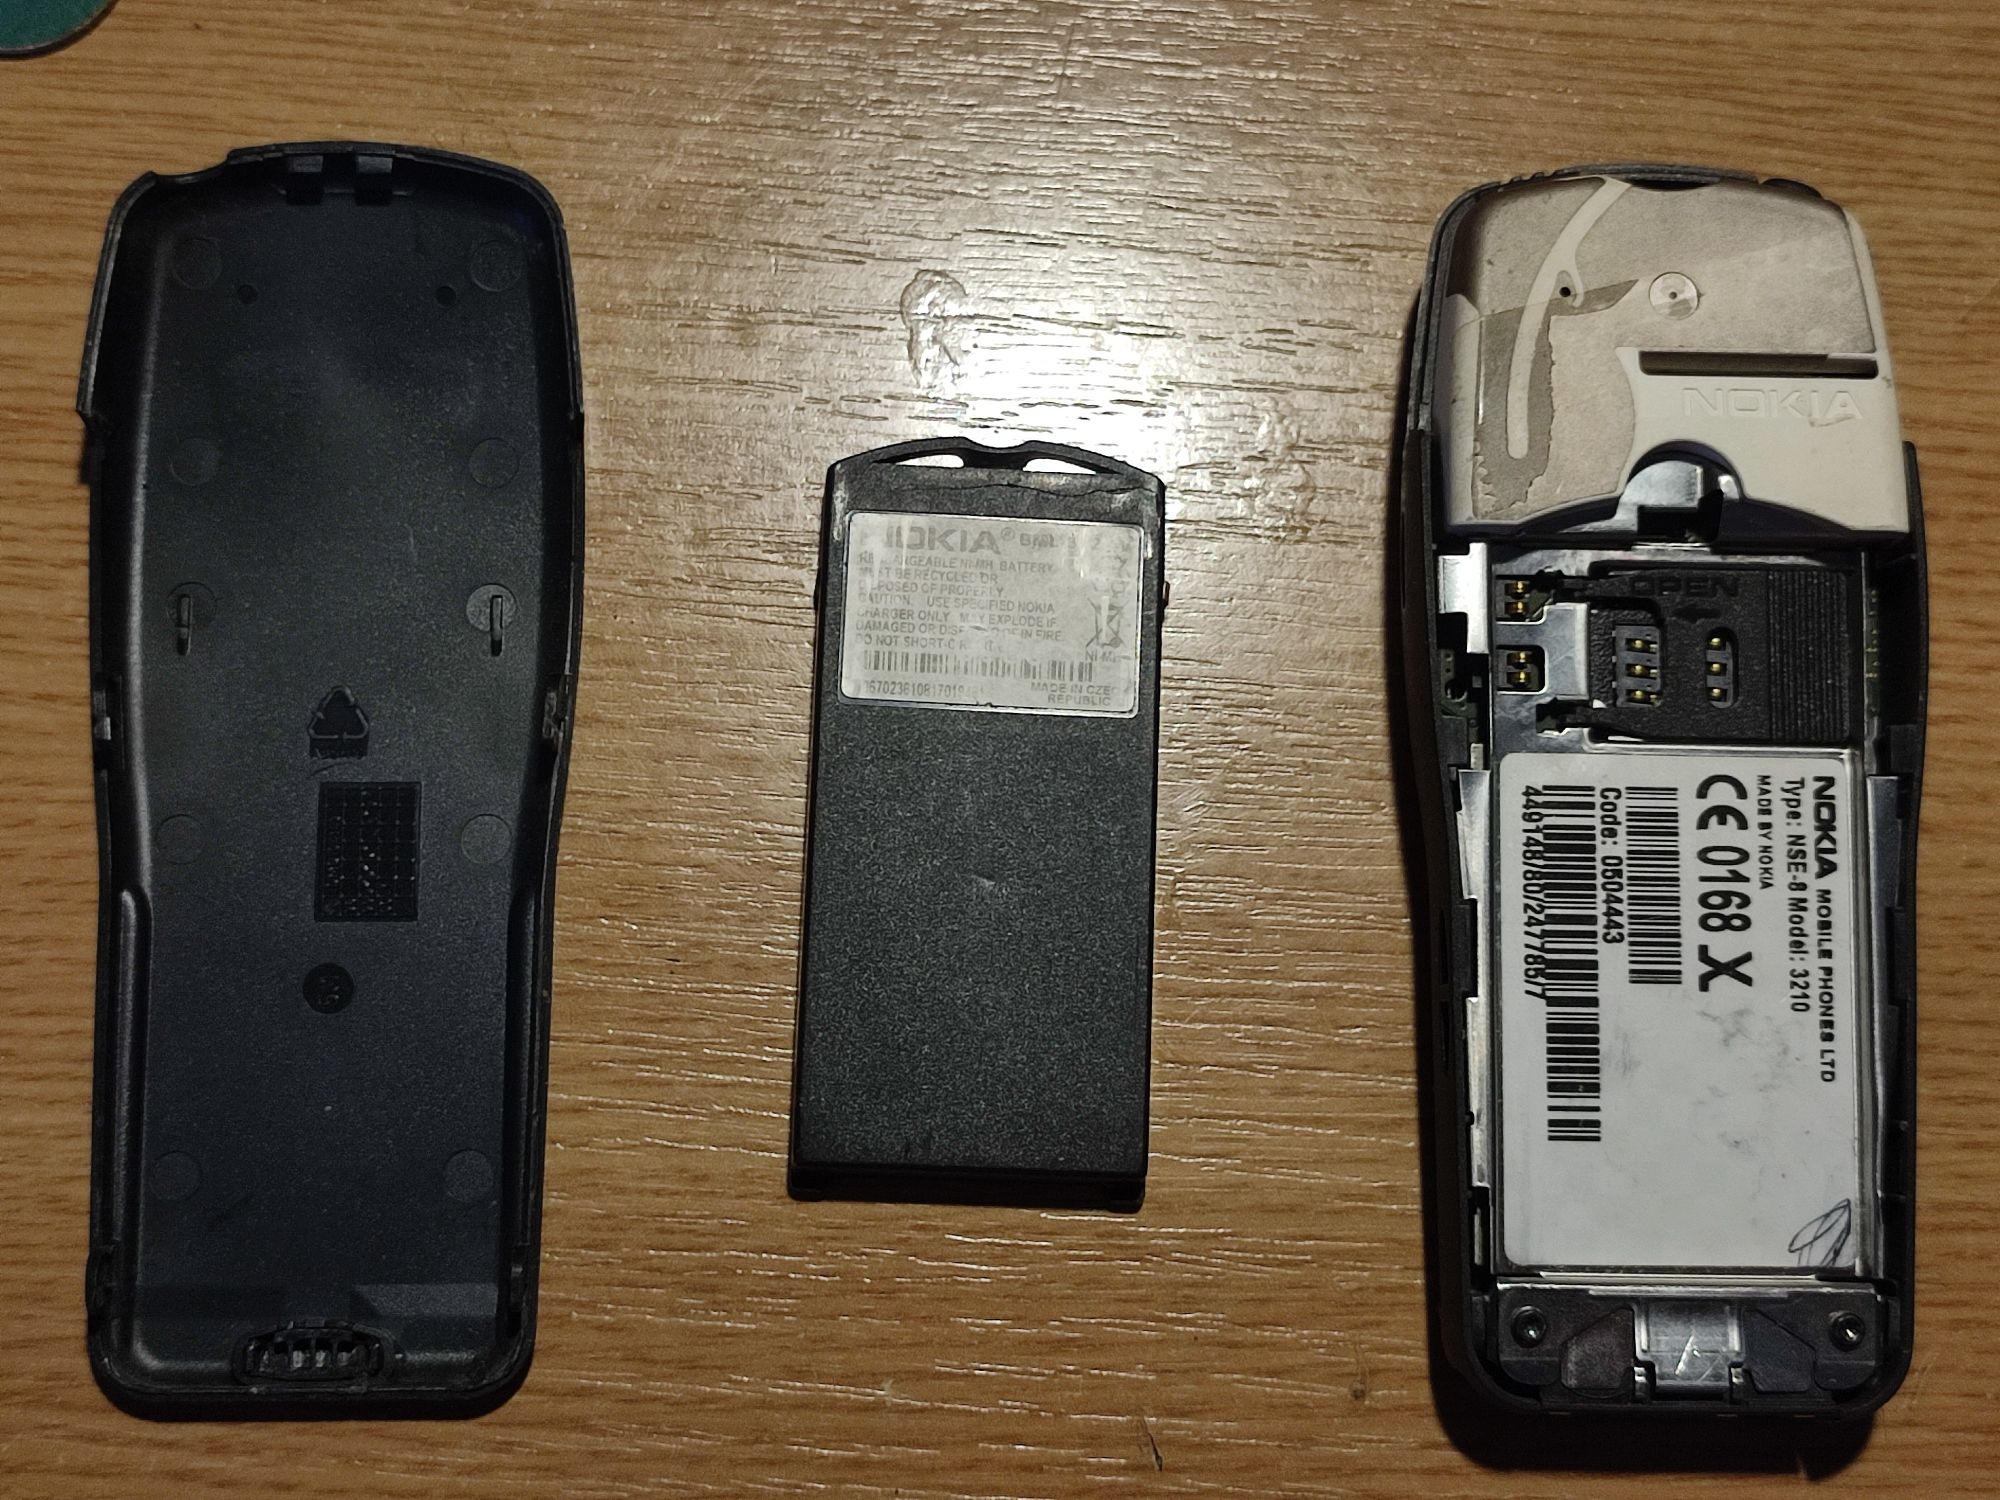 3 telefoane de colecție Nokia model 3210 + 2 baterii Nokia